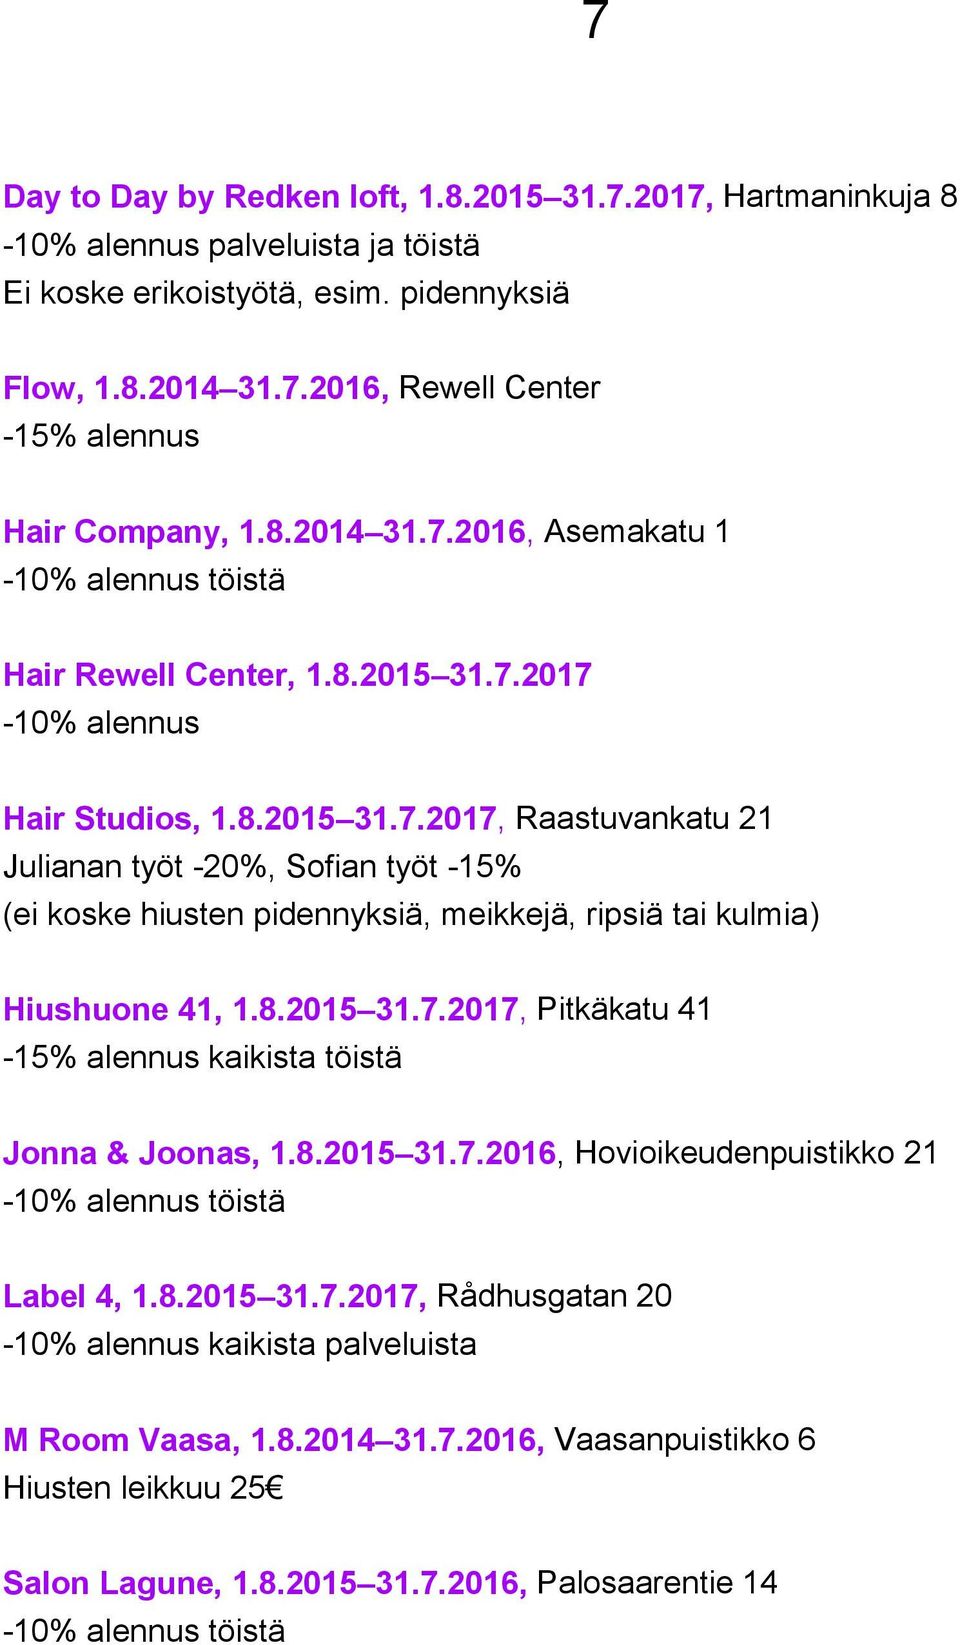 8.2015 31.7.2017, Pitkäkatu 41-15% alennus kaikista töistä Jonna & Joonas, 1.8.2015 31.7.2016, Hovioikeudenpuistikko 21-10% alennus töistä Label 4, 1.8.2015 31.7.2017, Rådhusgatan 20-10% alennus kaikista palveluista M Room Vaasa, 1.